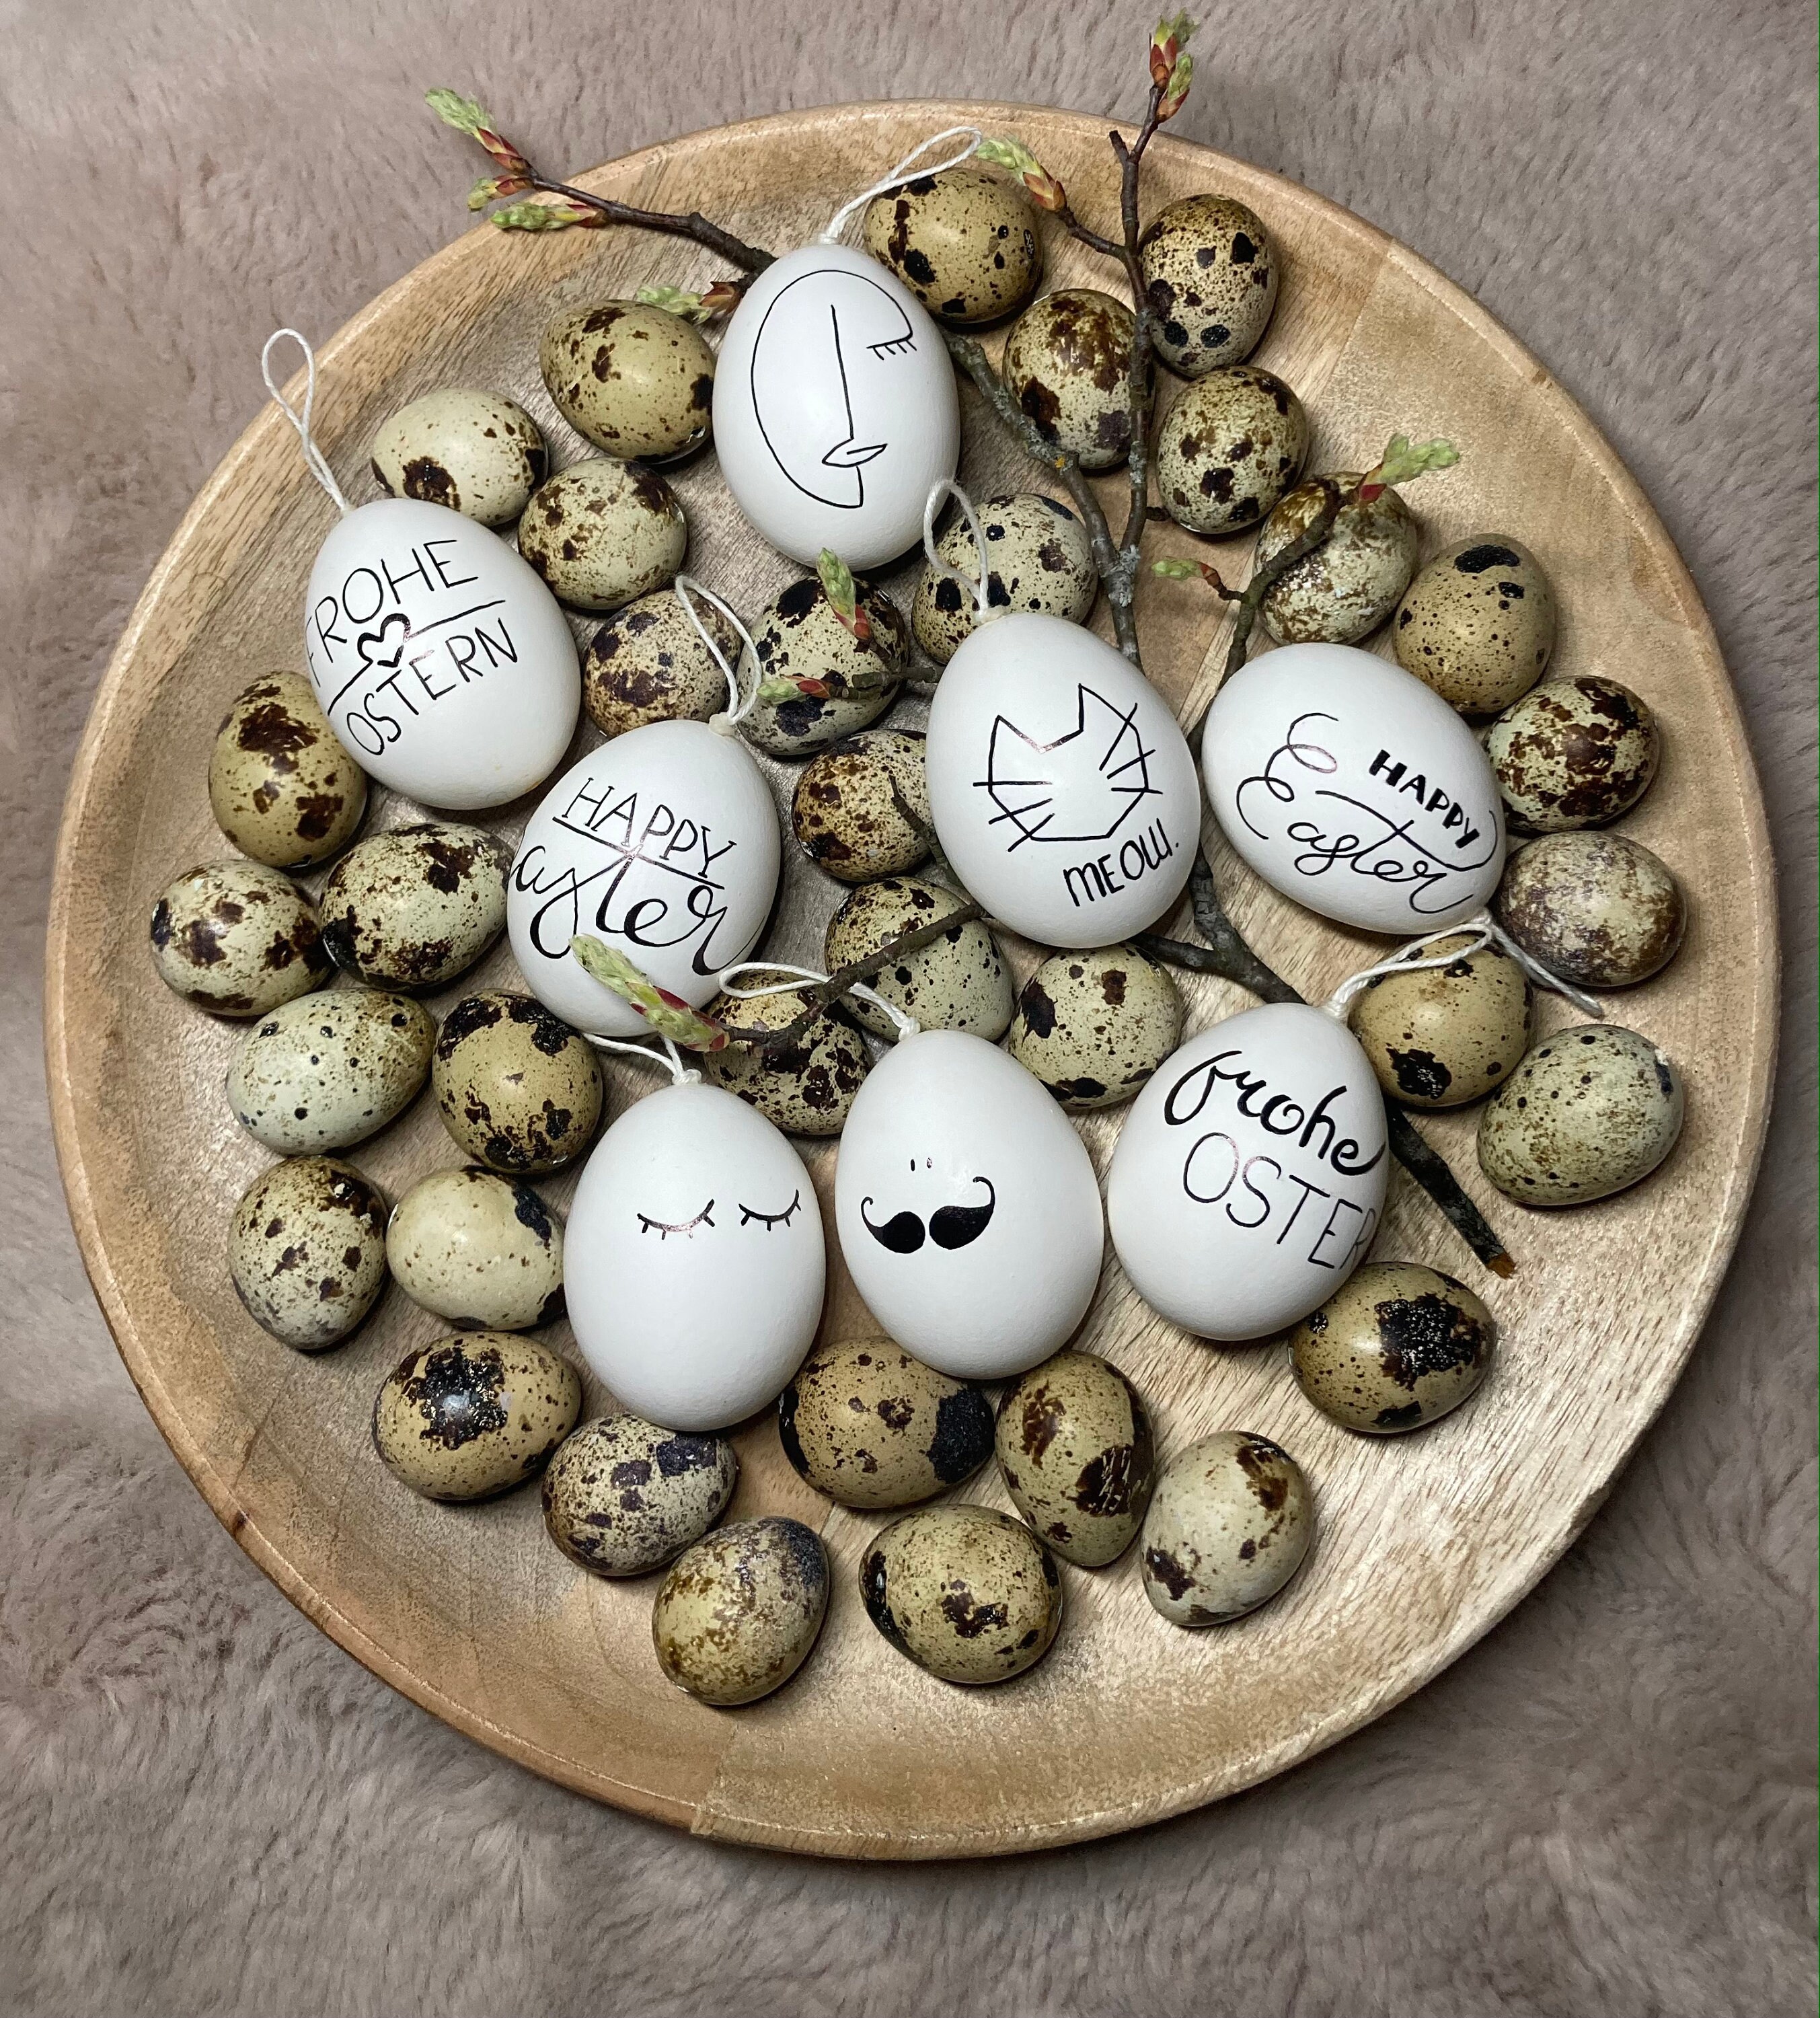 5 Amazing Easter Egg Decorating Ideas - Centsable Momma